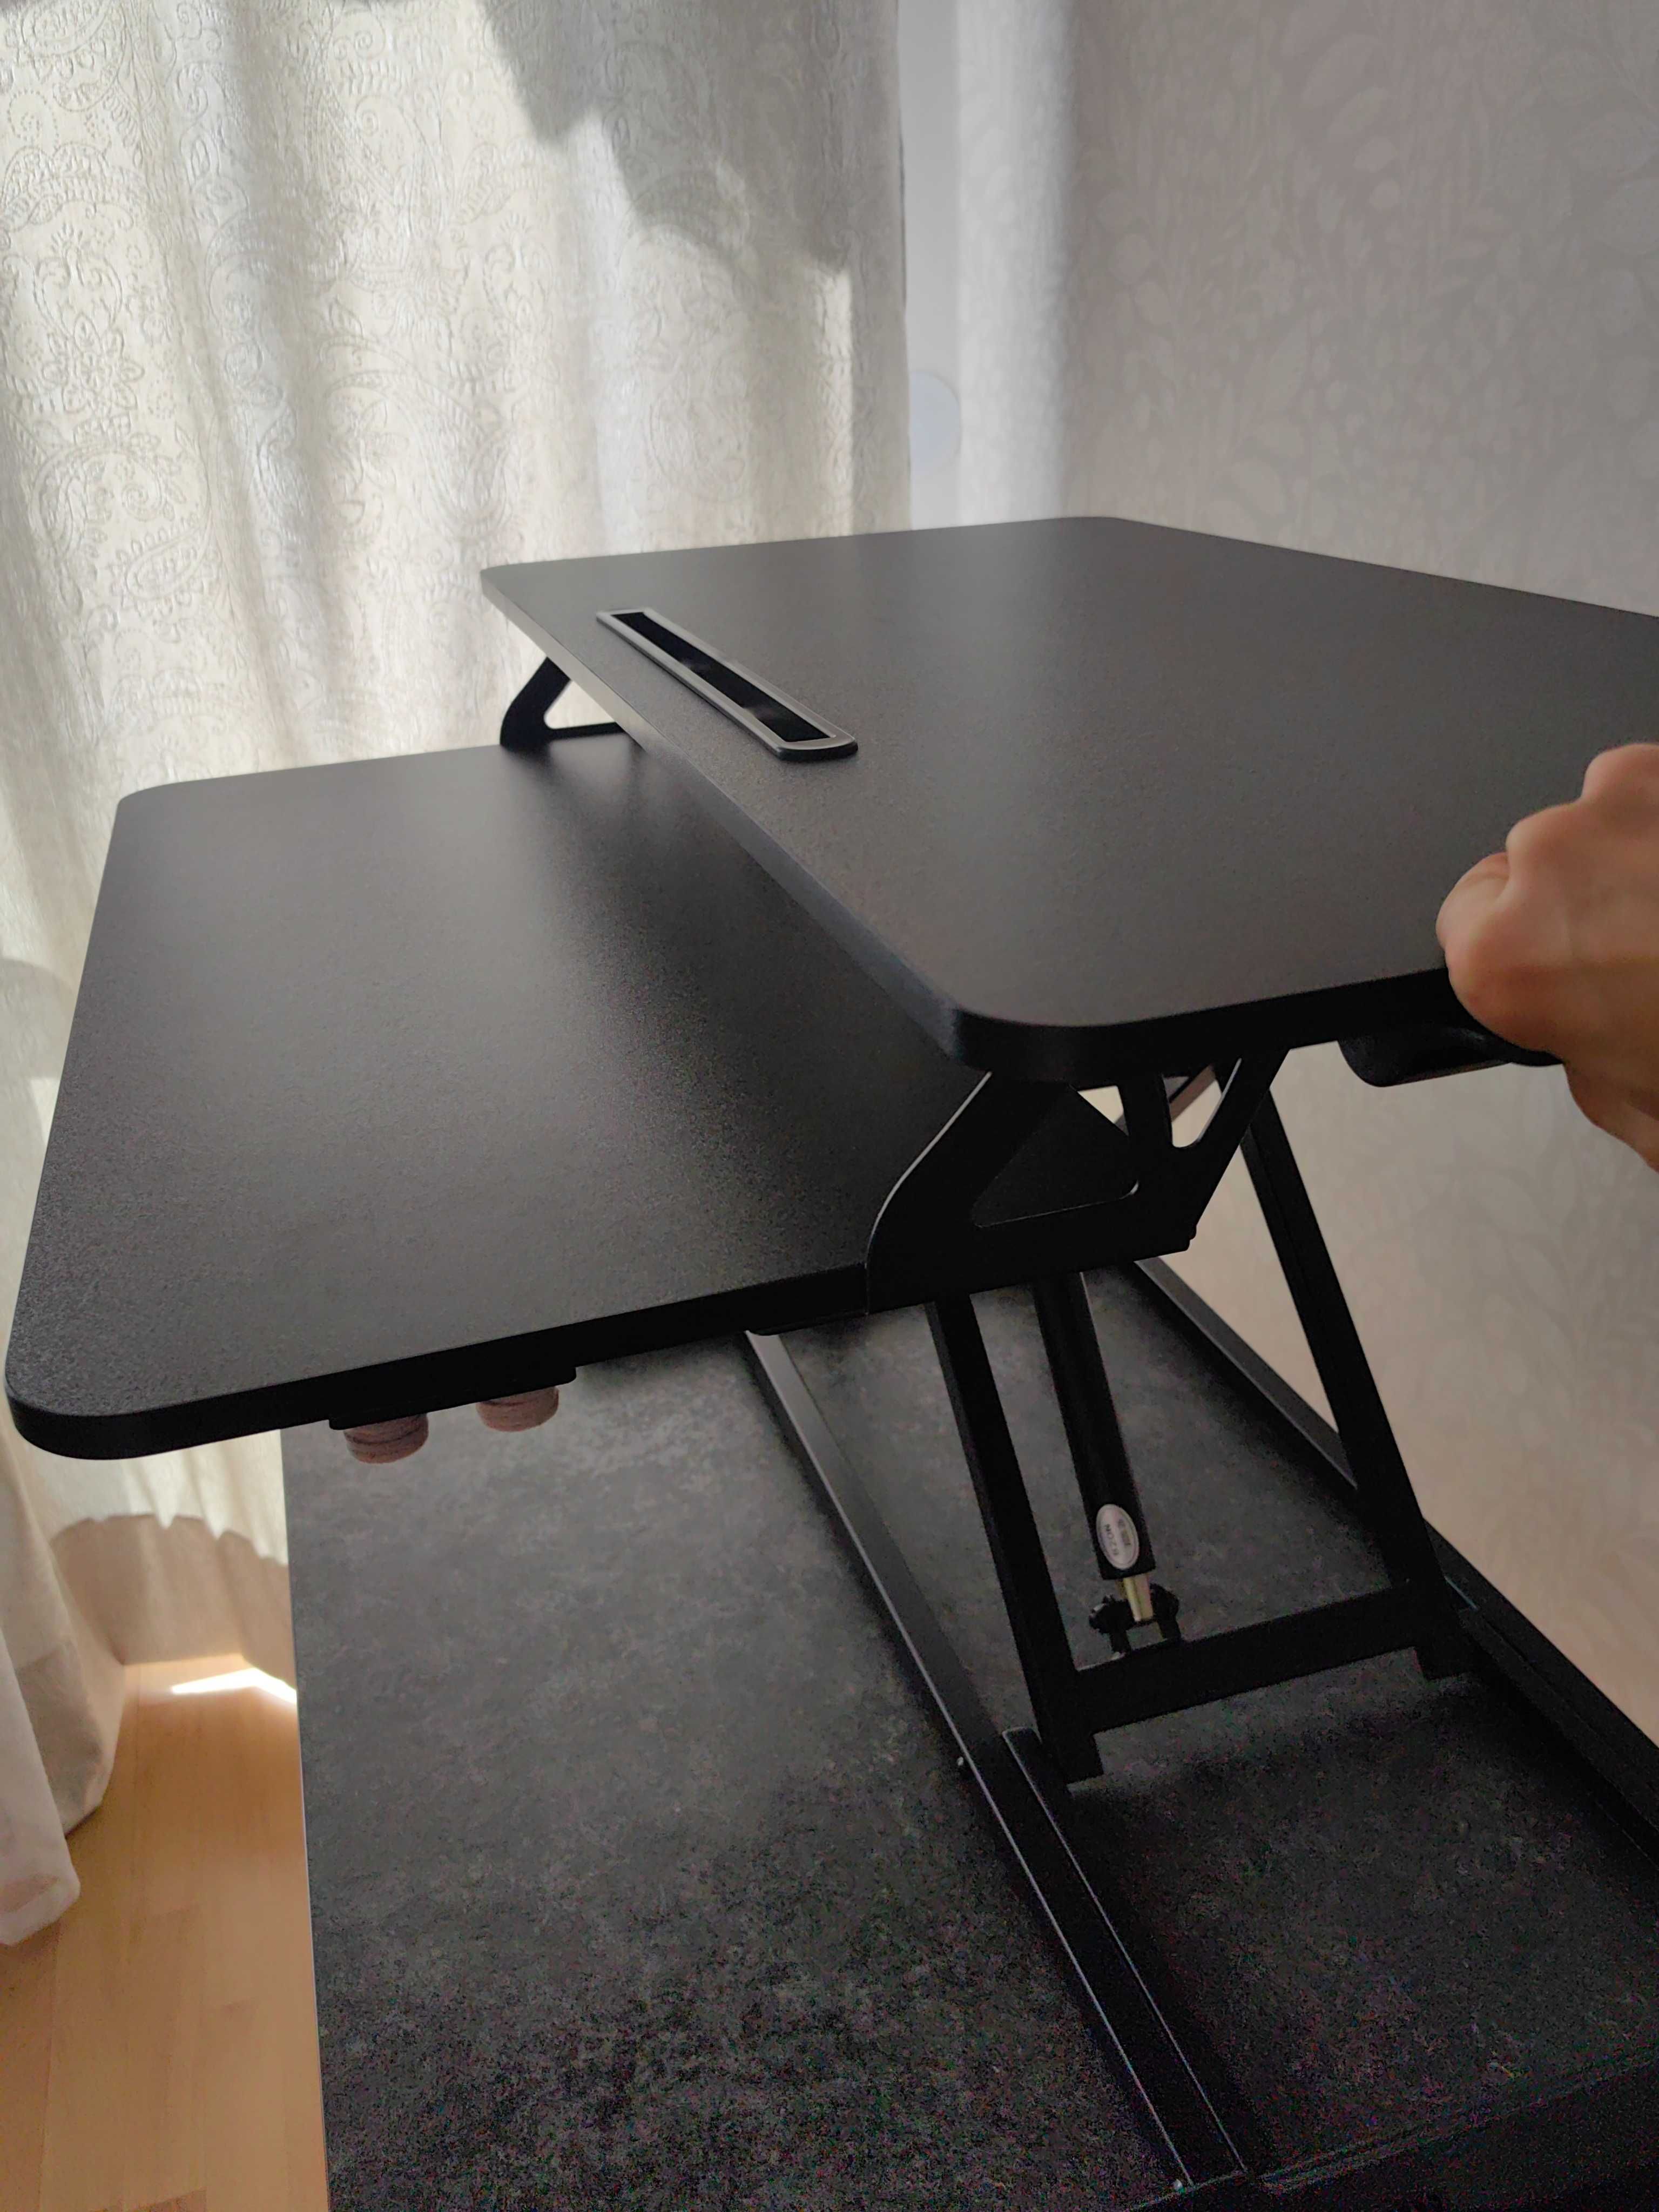 Konwerter biurka, podkładka pod laptop